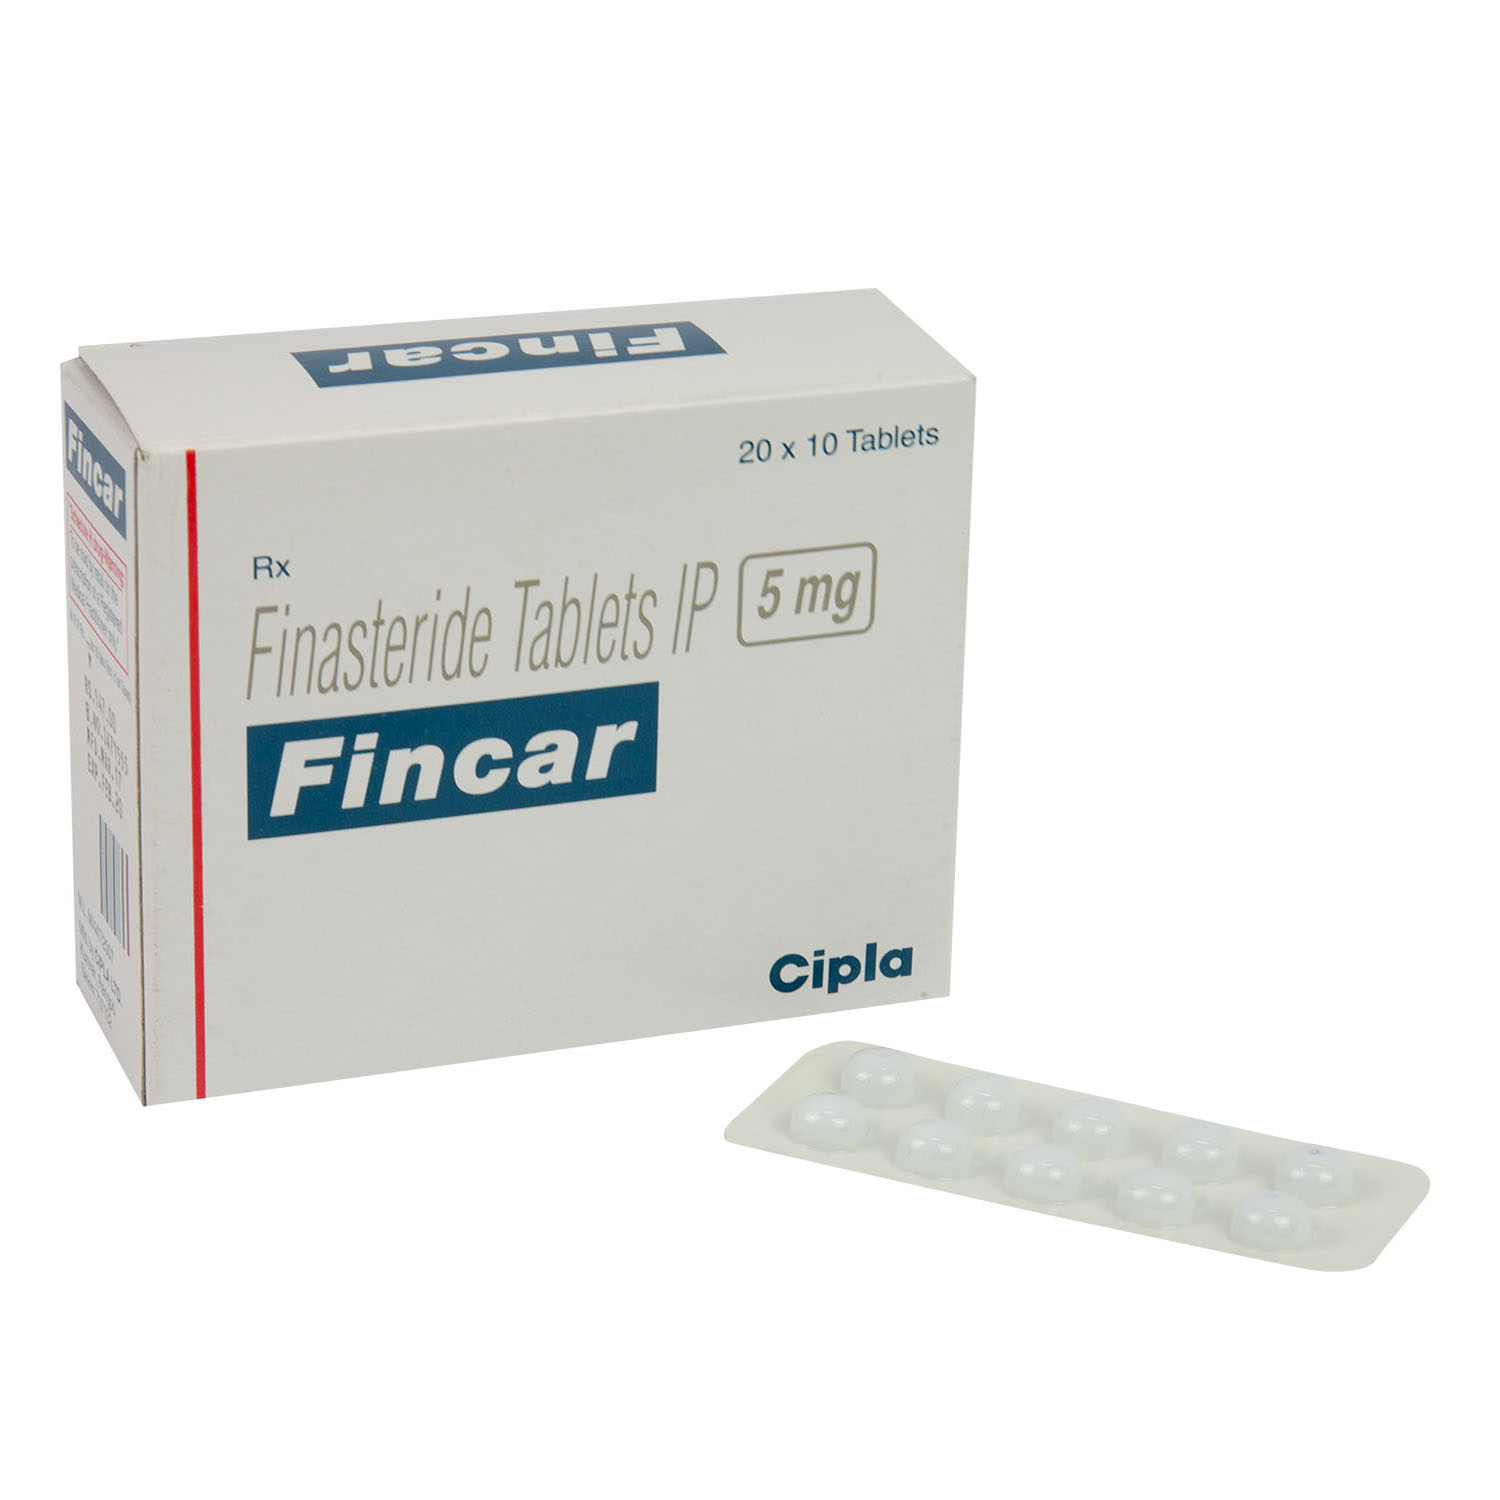 フィンカー5mg フィナステリド錠 通販 Aga治療薬 医薬品個人輸入代行くすりエクスプレス